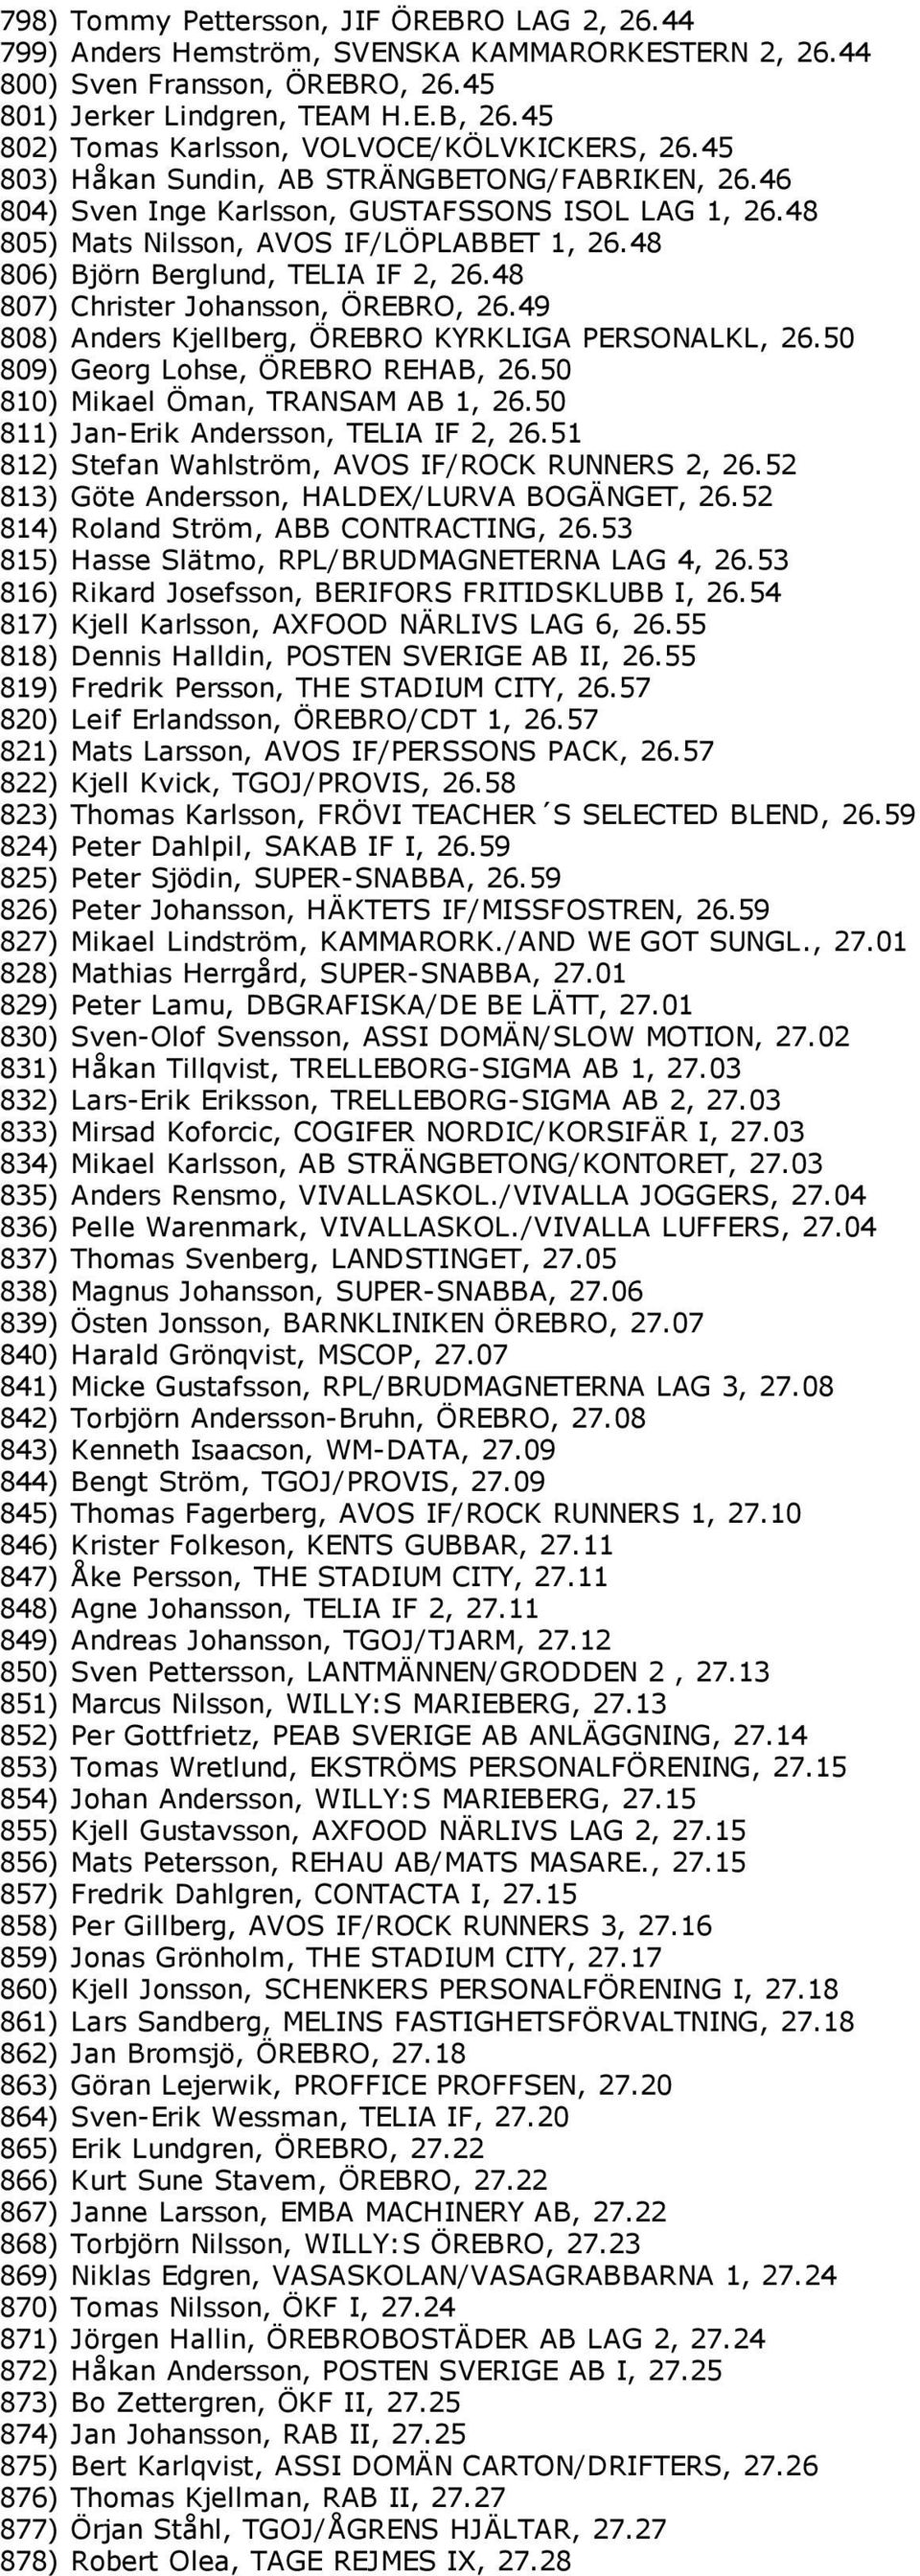 48 806) Björn Berglund, TELIA IF 2, 26.48 807) Christer Johansson, ÖREBRO, 26.49 808) Anders Kjellberg, ÖREBRO KYRKLIGA PERSONALKL, 26.50 809) Georg Lohse, ÖREBRO REHAB, 26.